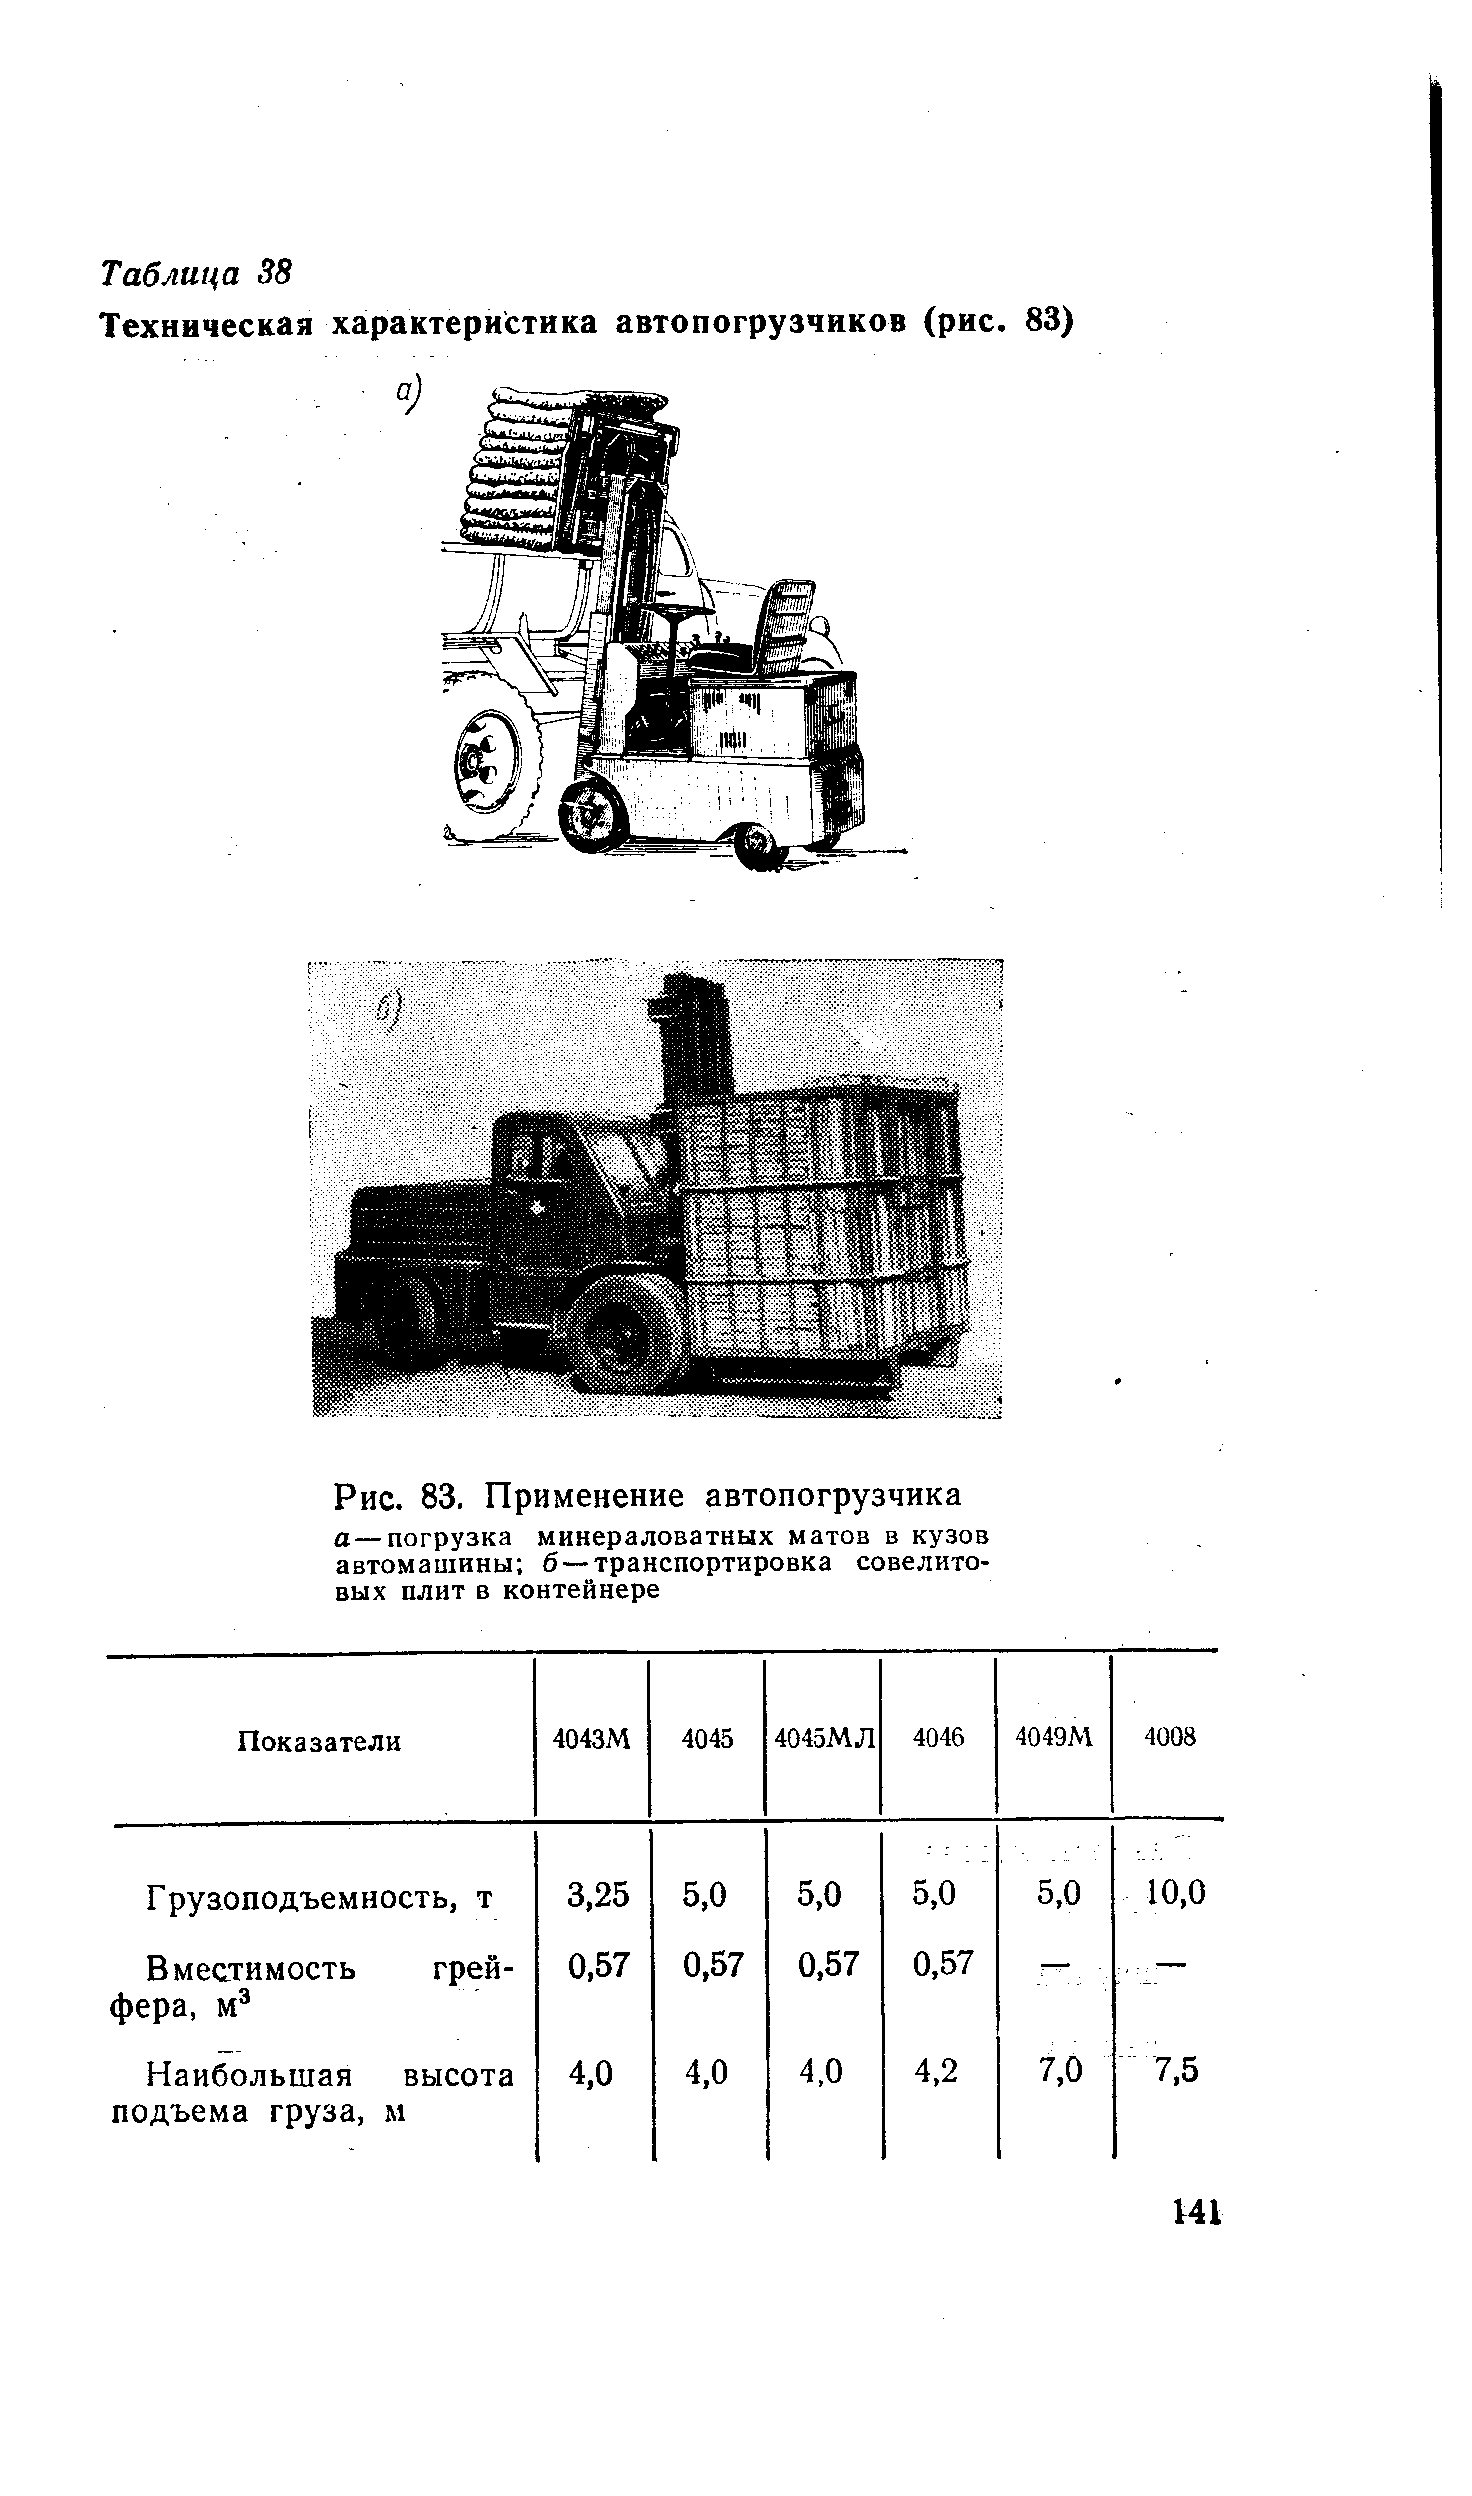 Львовский погрузчик: модели, технические характеристики, тоннаж - mtz-80.ru